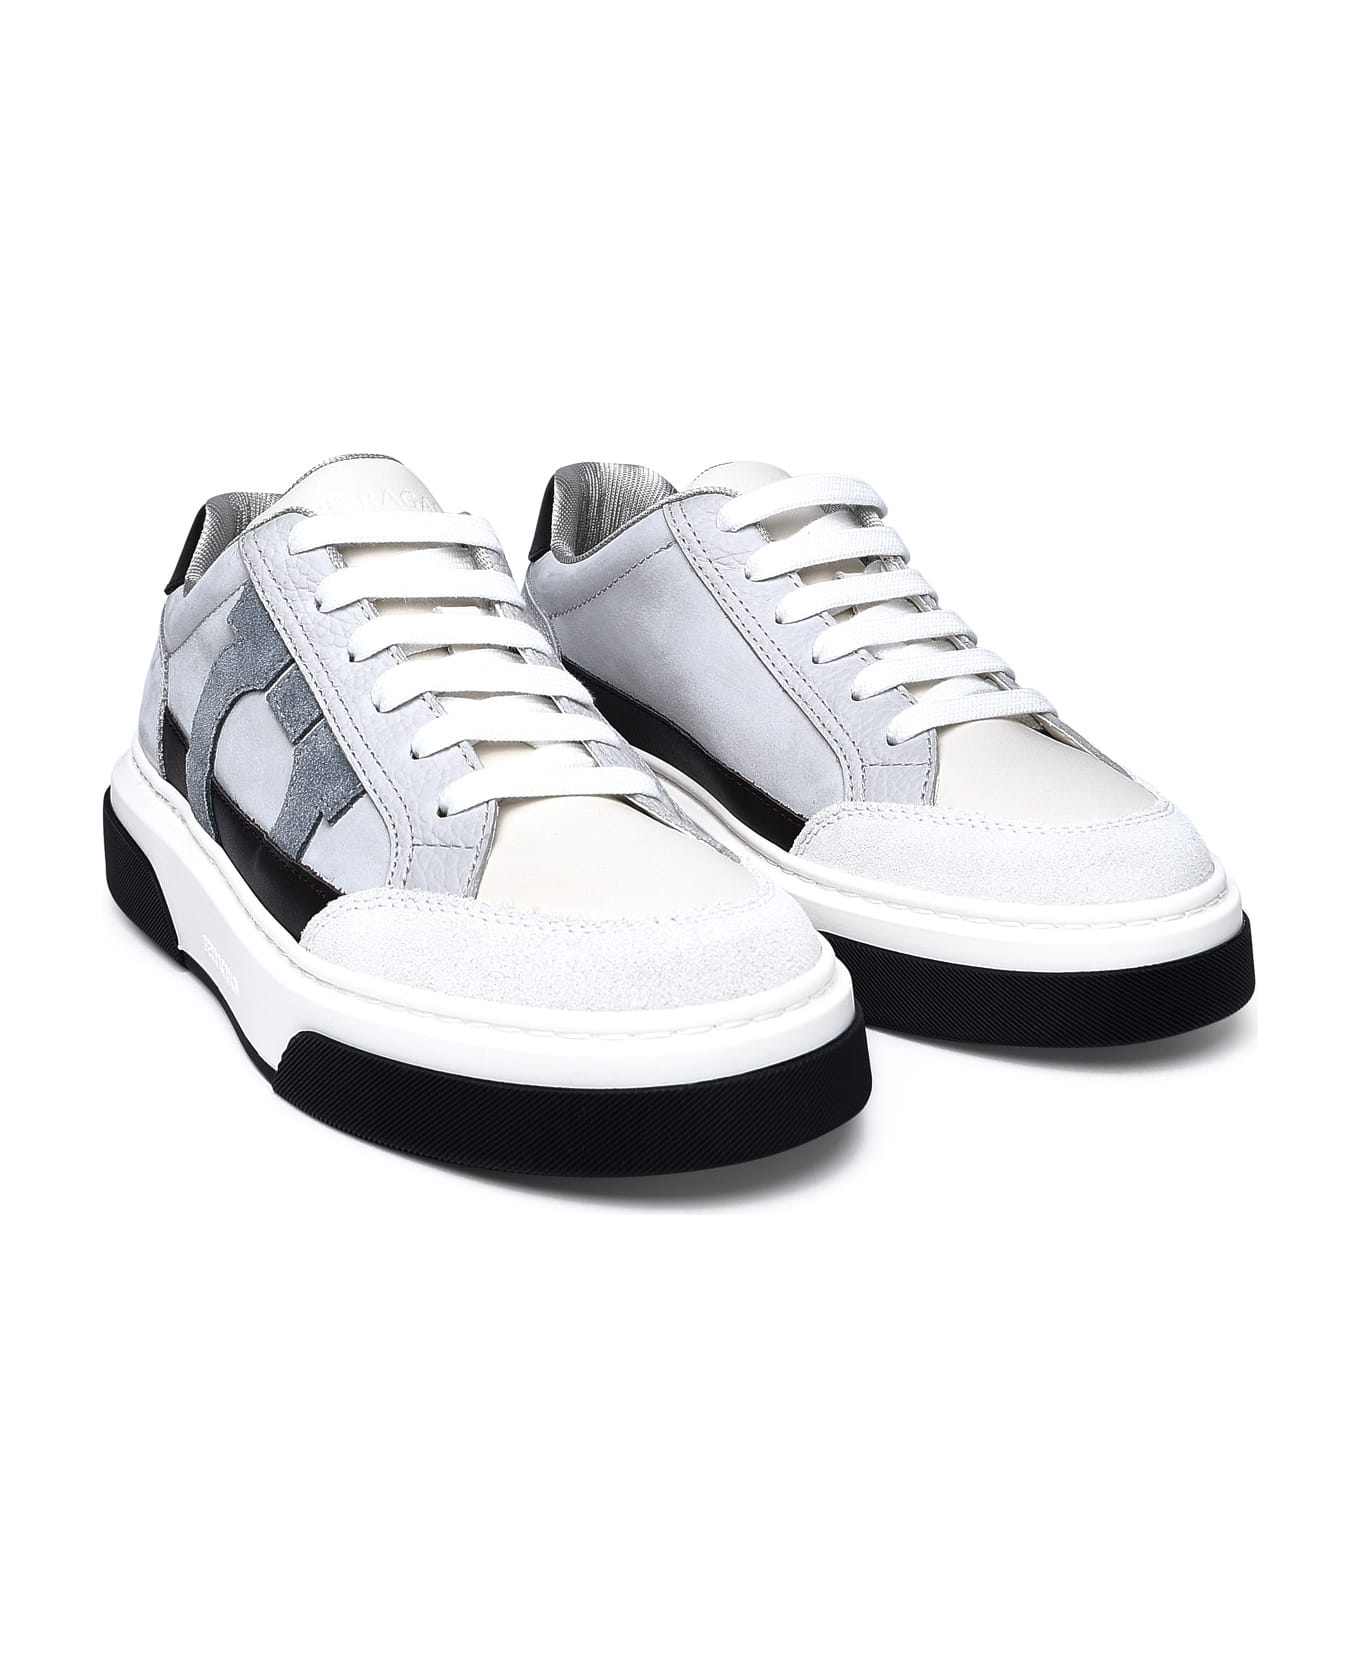 Ferragamo Multicolor Nappa Leather Sneakers - Bianco 511